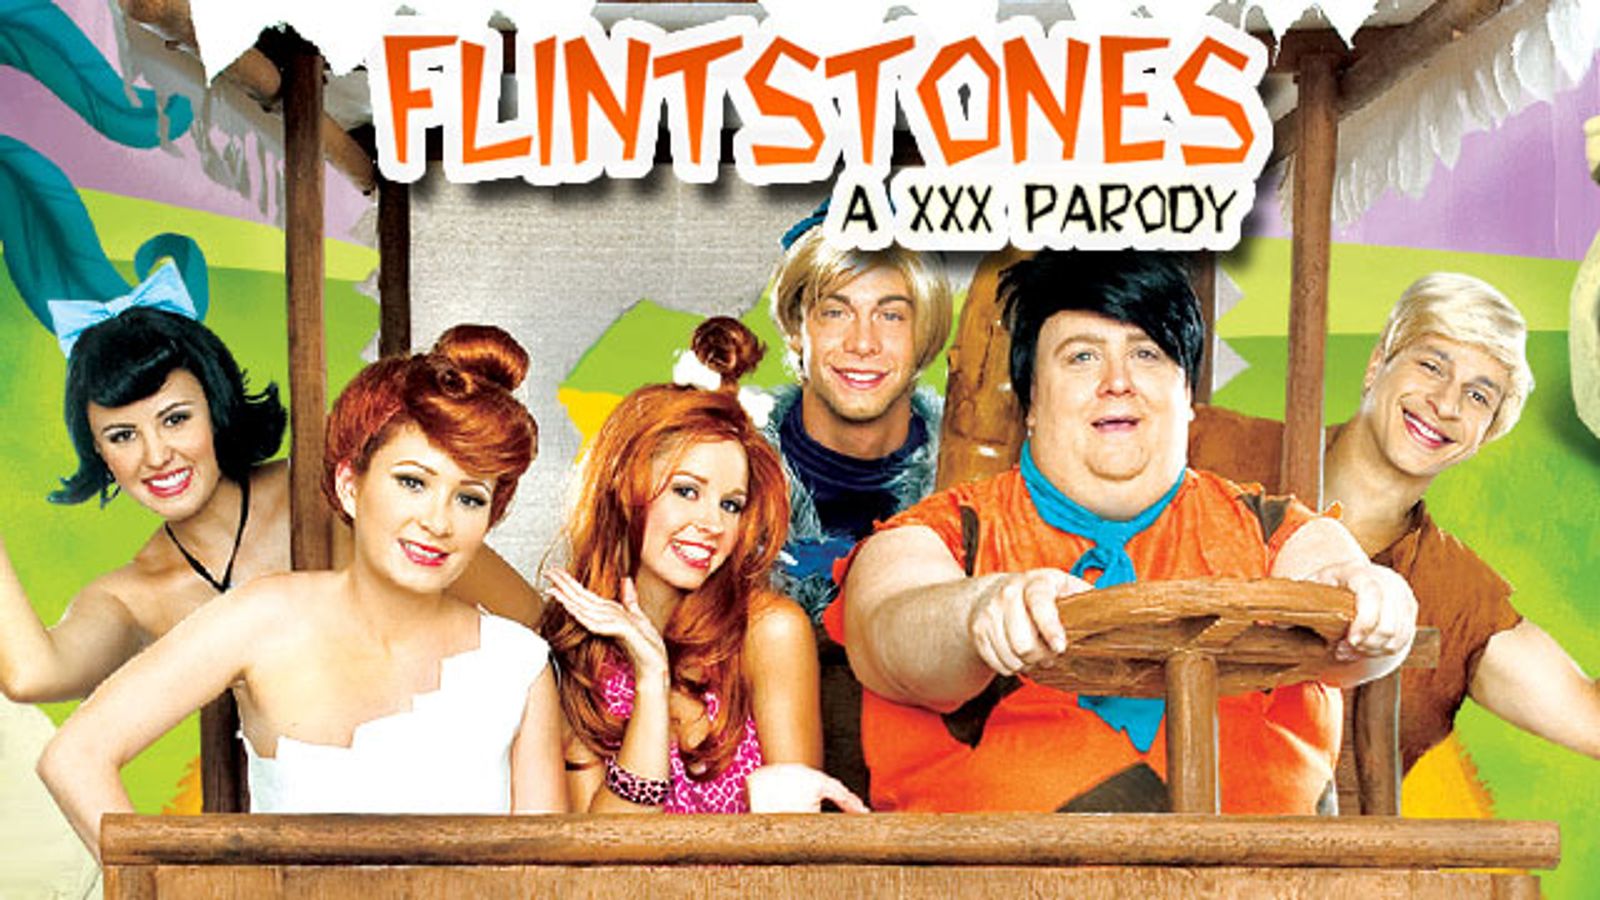 Flintstones the a xxx parody